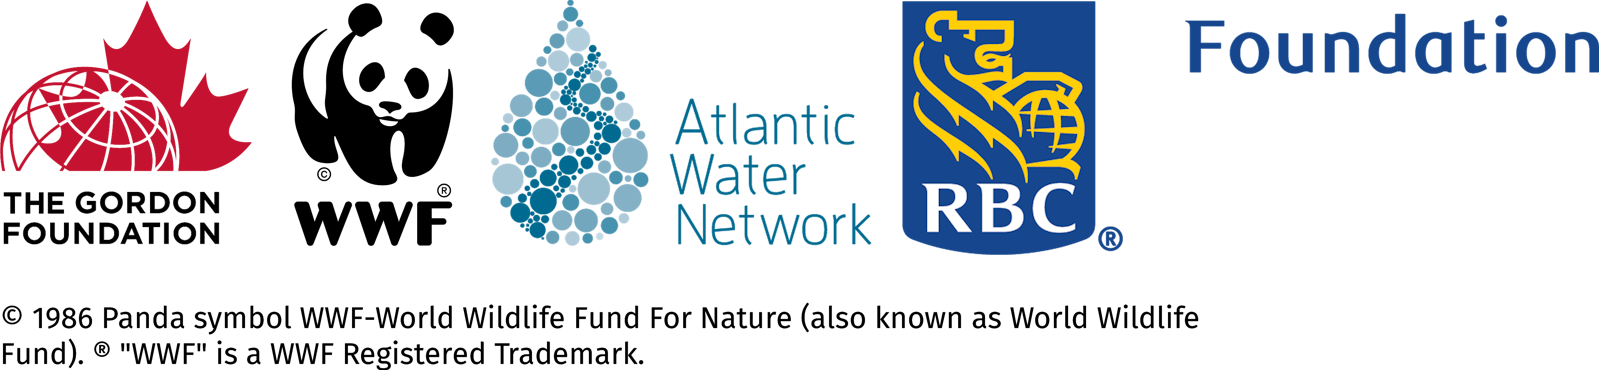  Logos pour la Gordon Foundation, le World Wildlife Fund, le Atlantic Water Network et la RBC Foundation